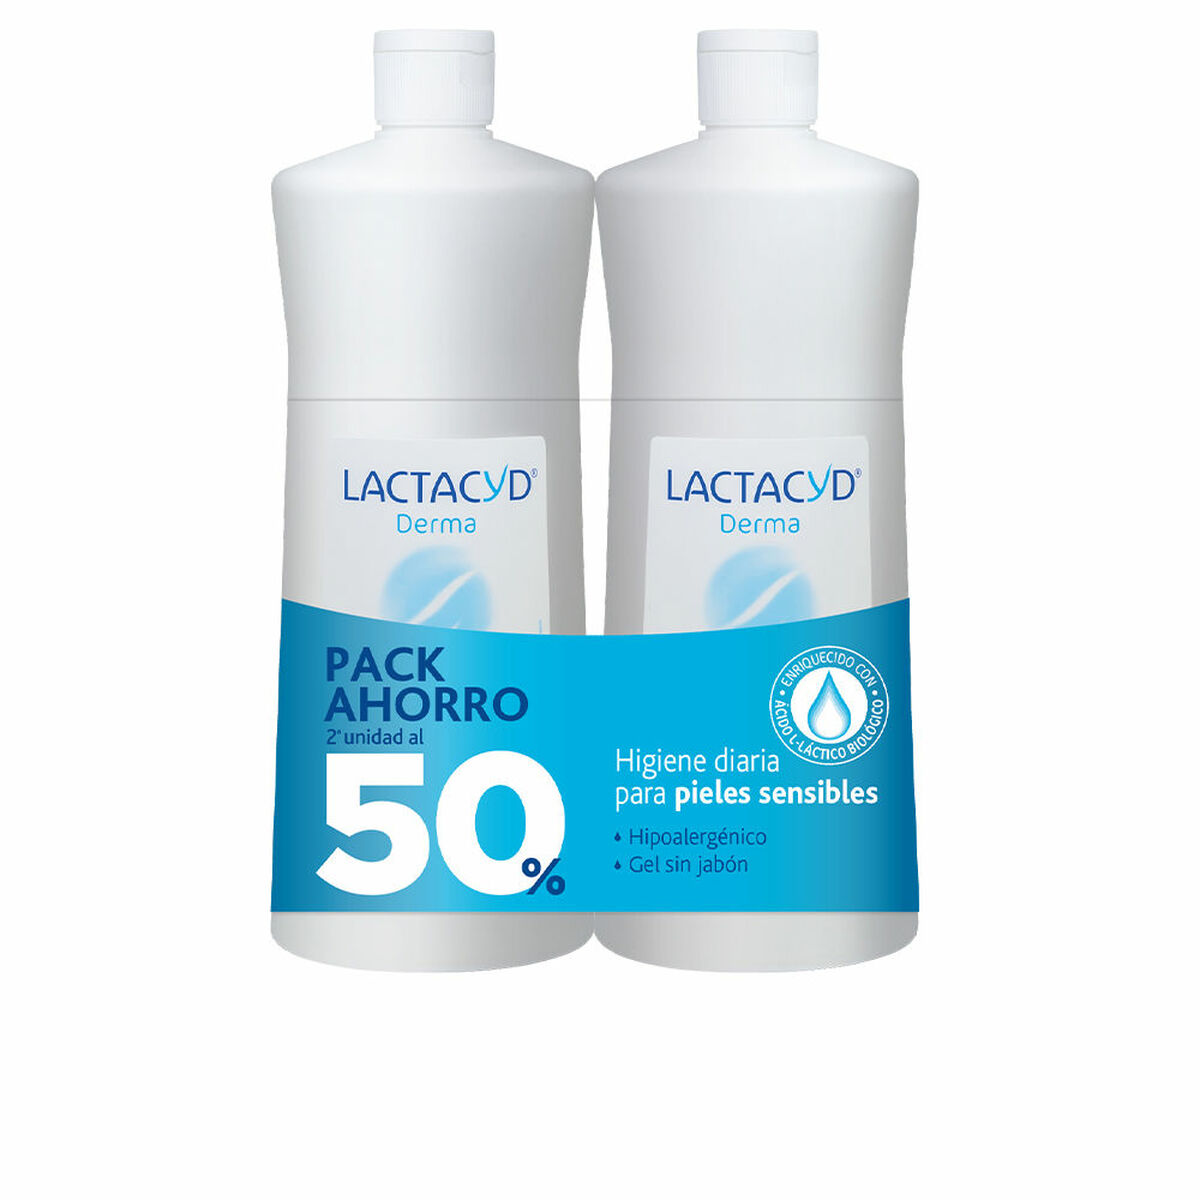 Lactacyd - 